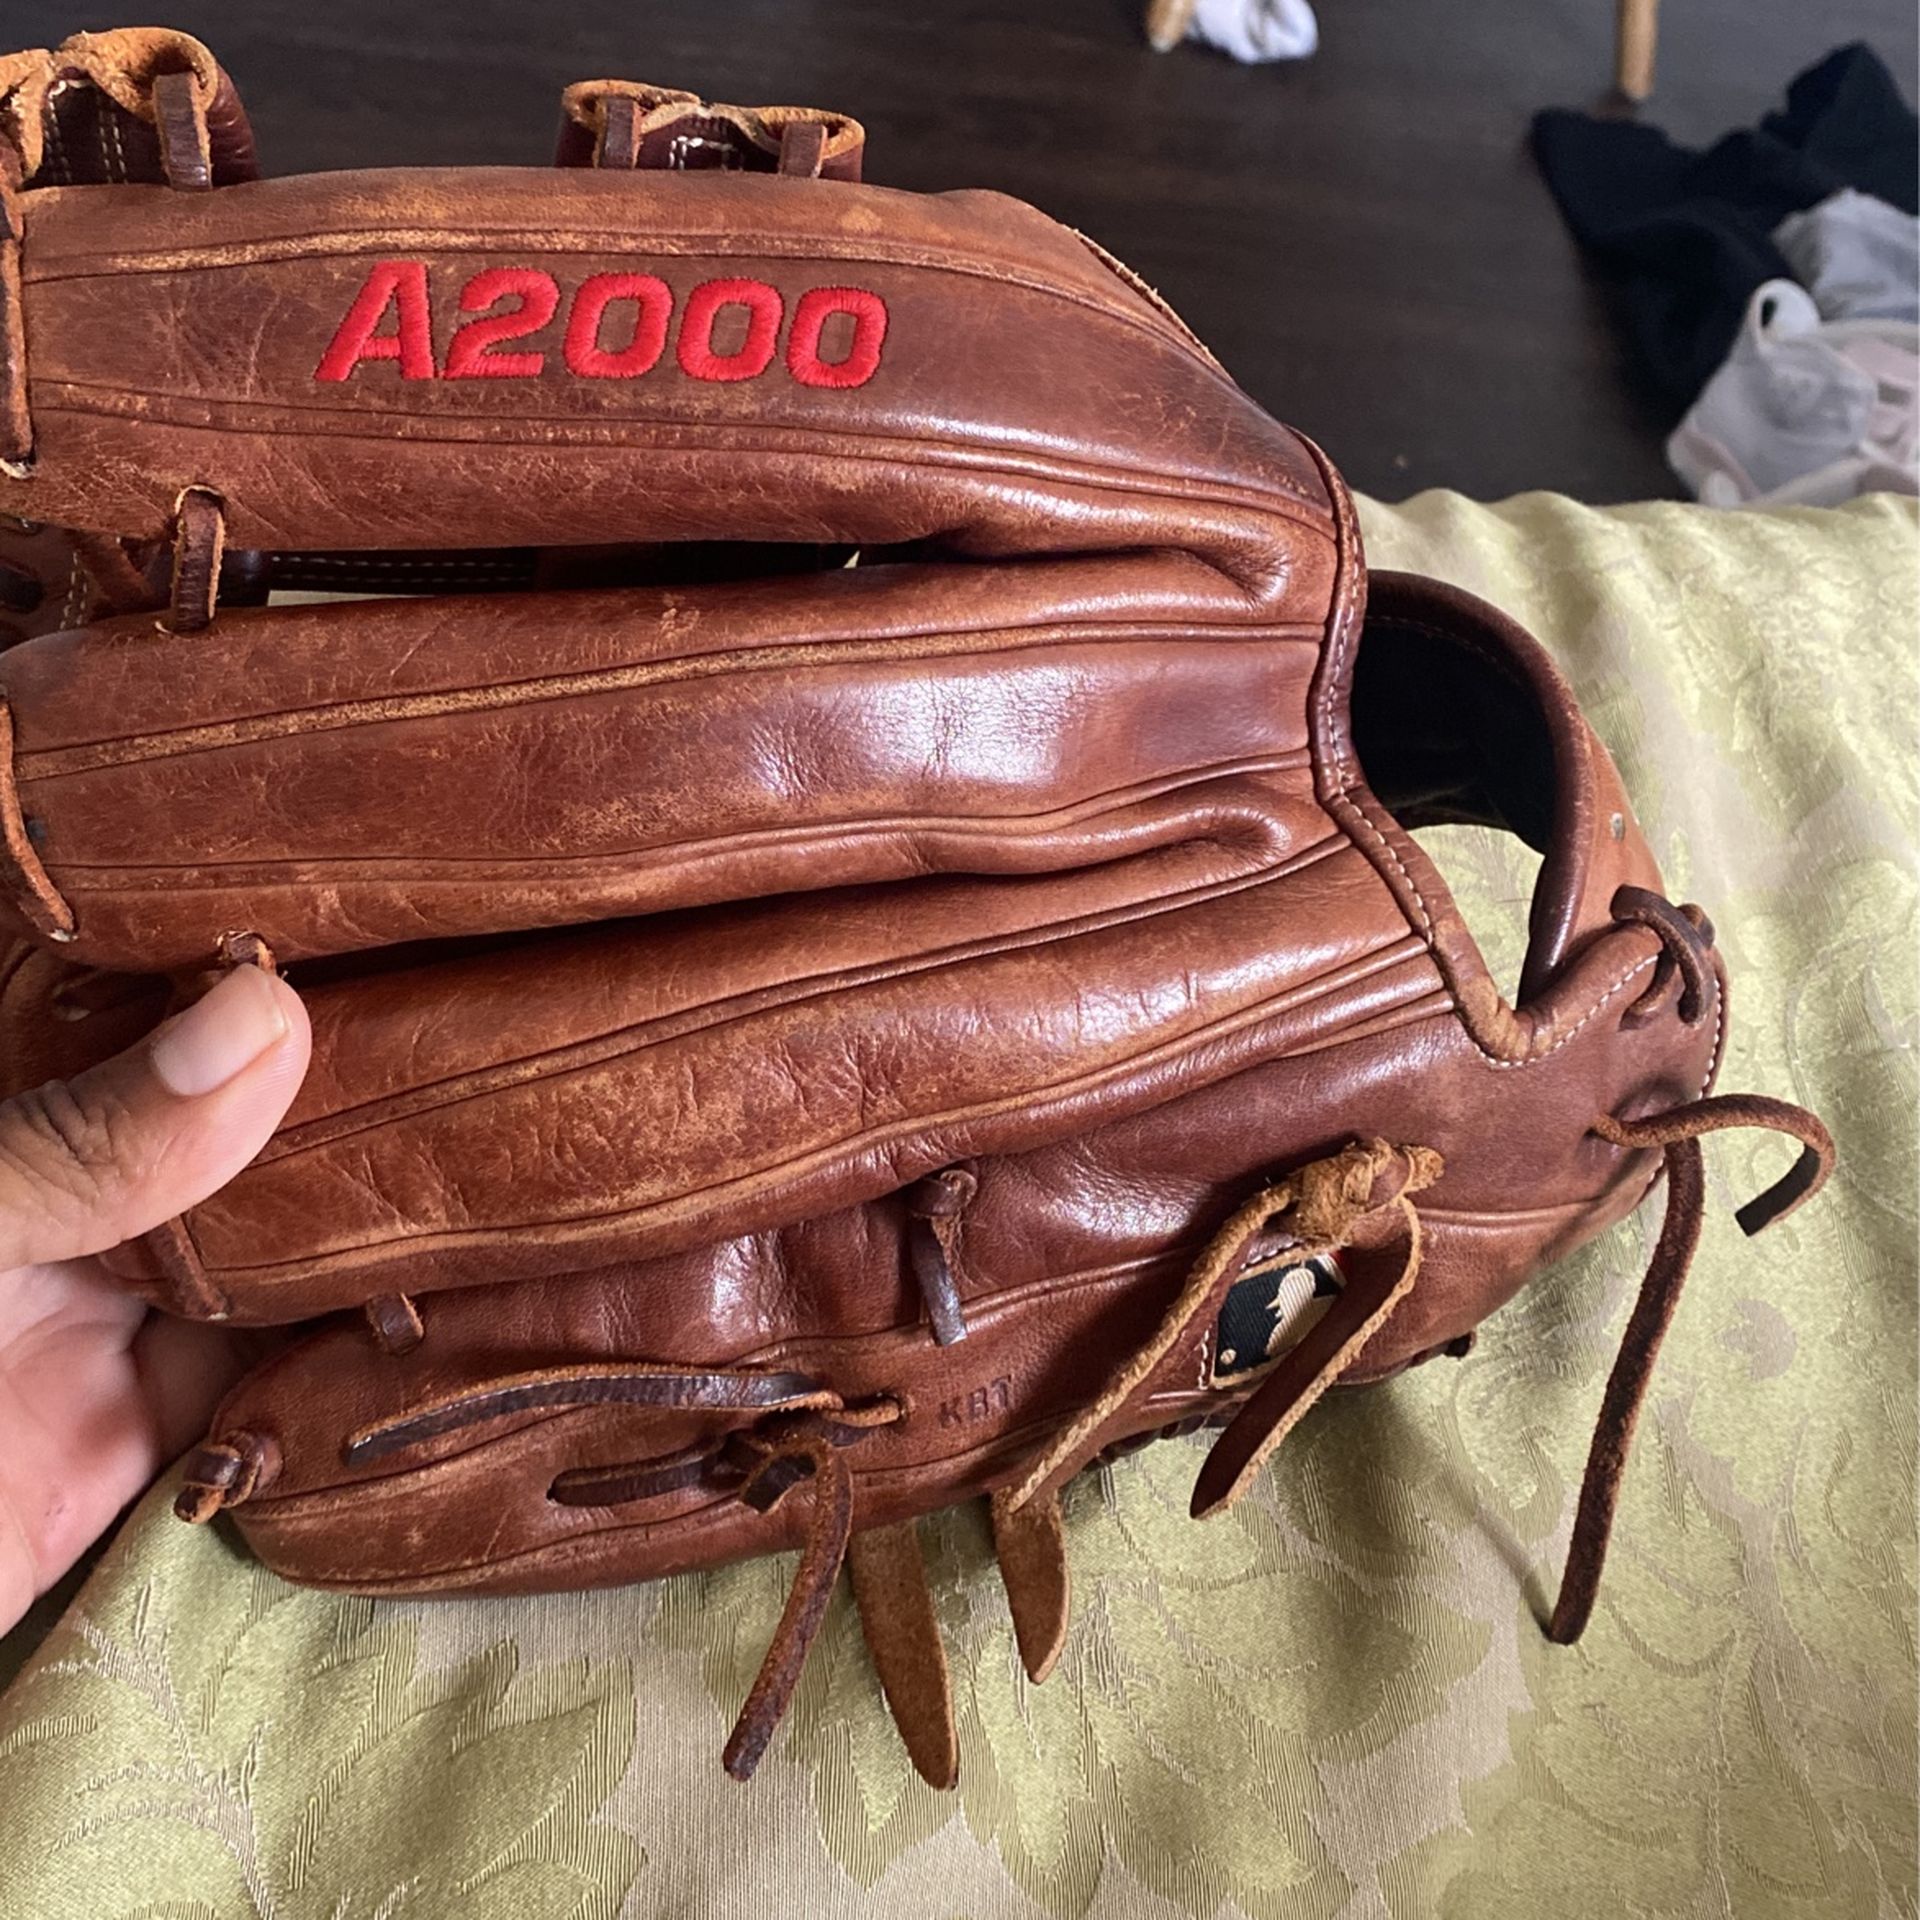 a2000 baseball glove.